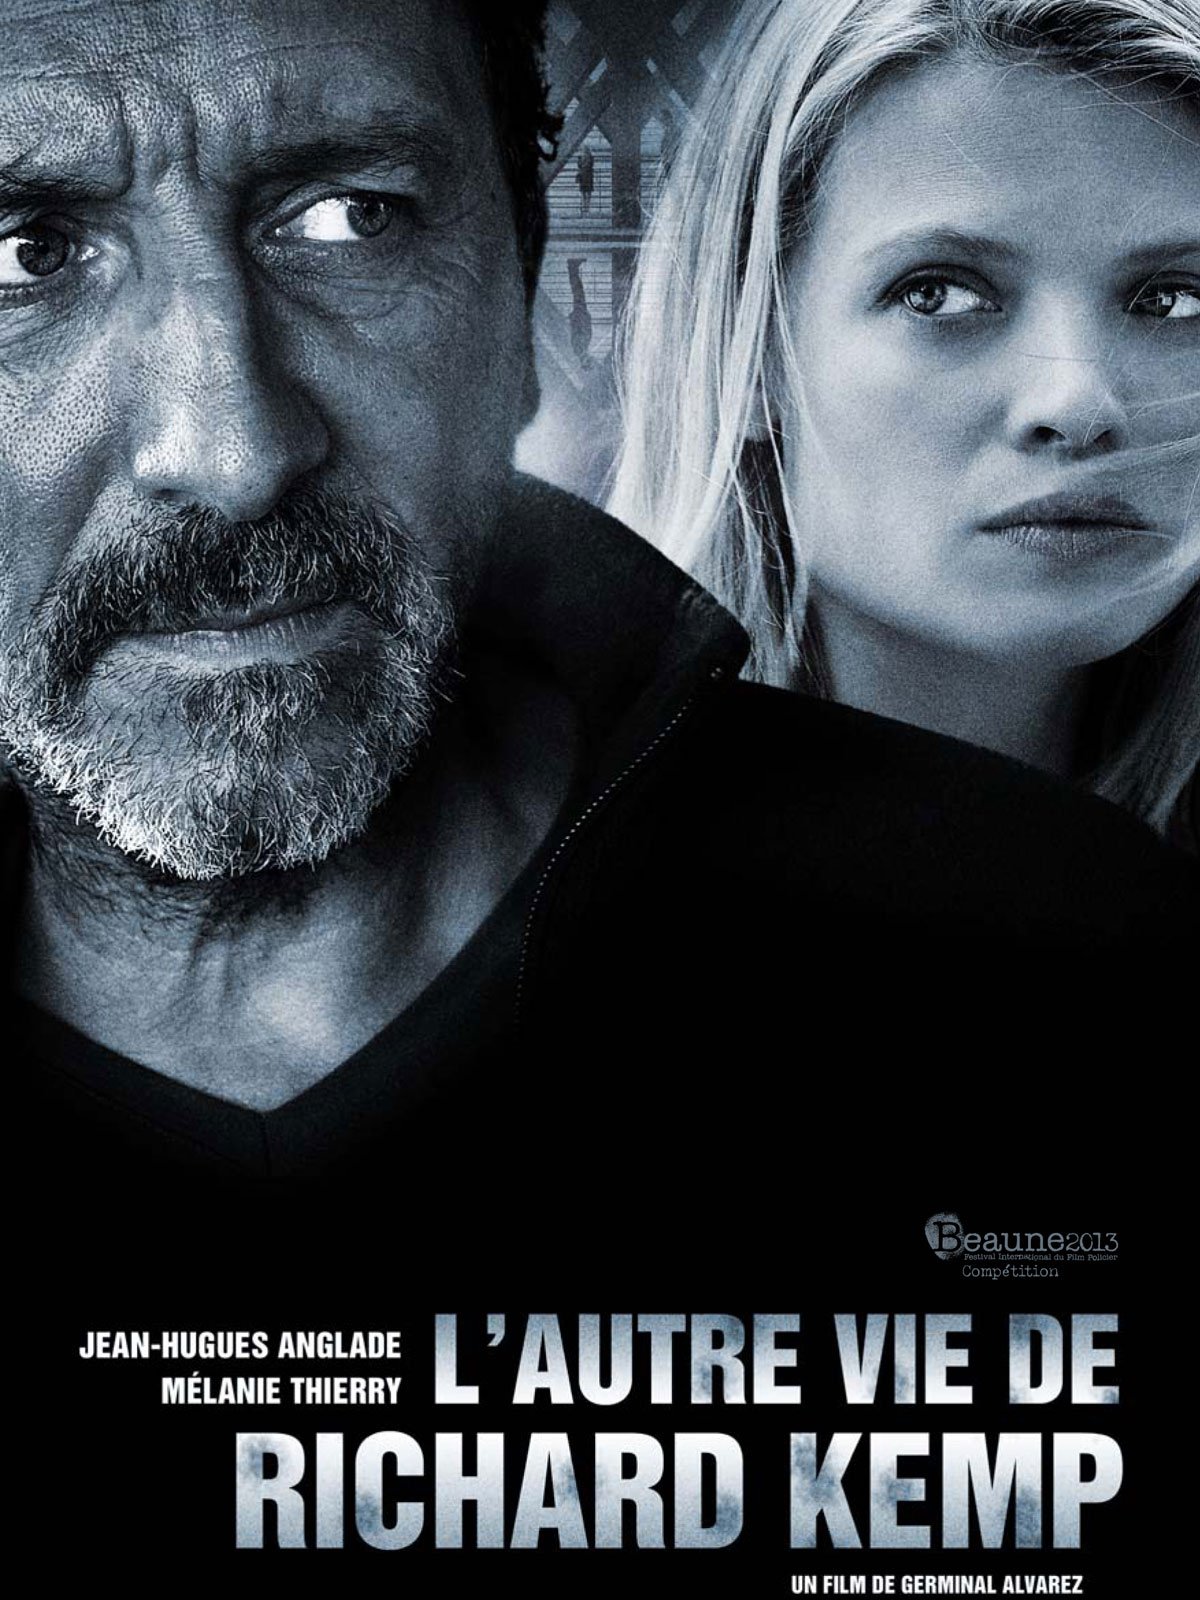 Poster of the movie L'Autre vie de Richard Kemp